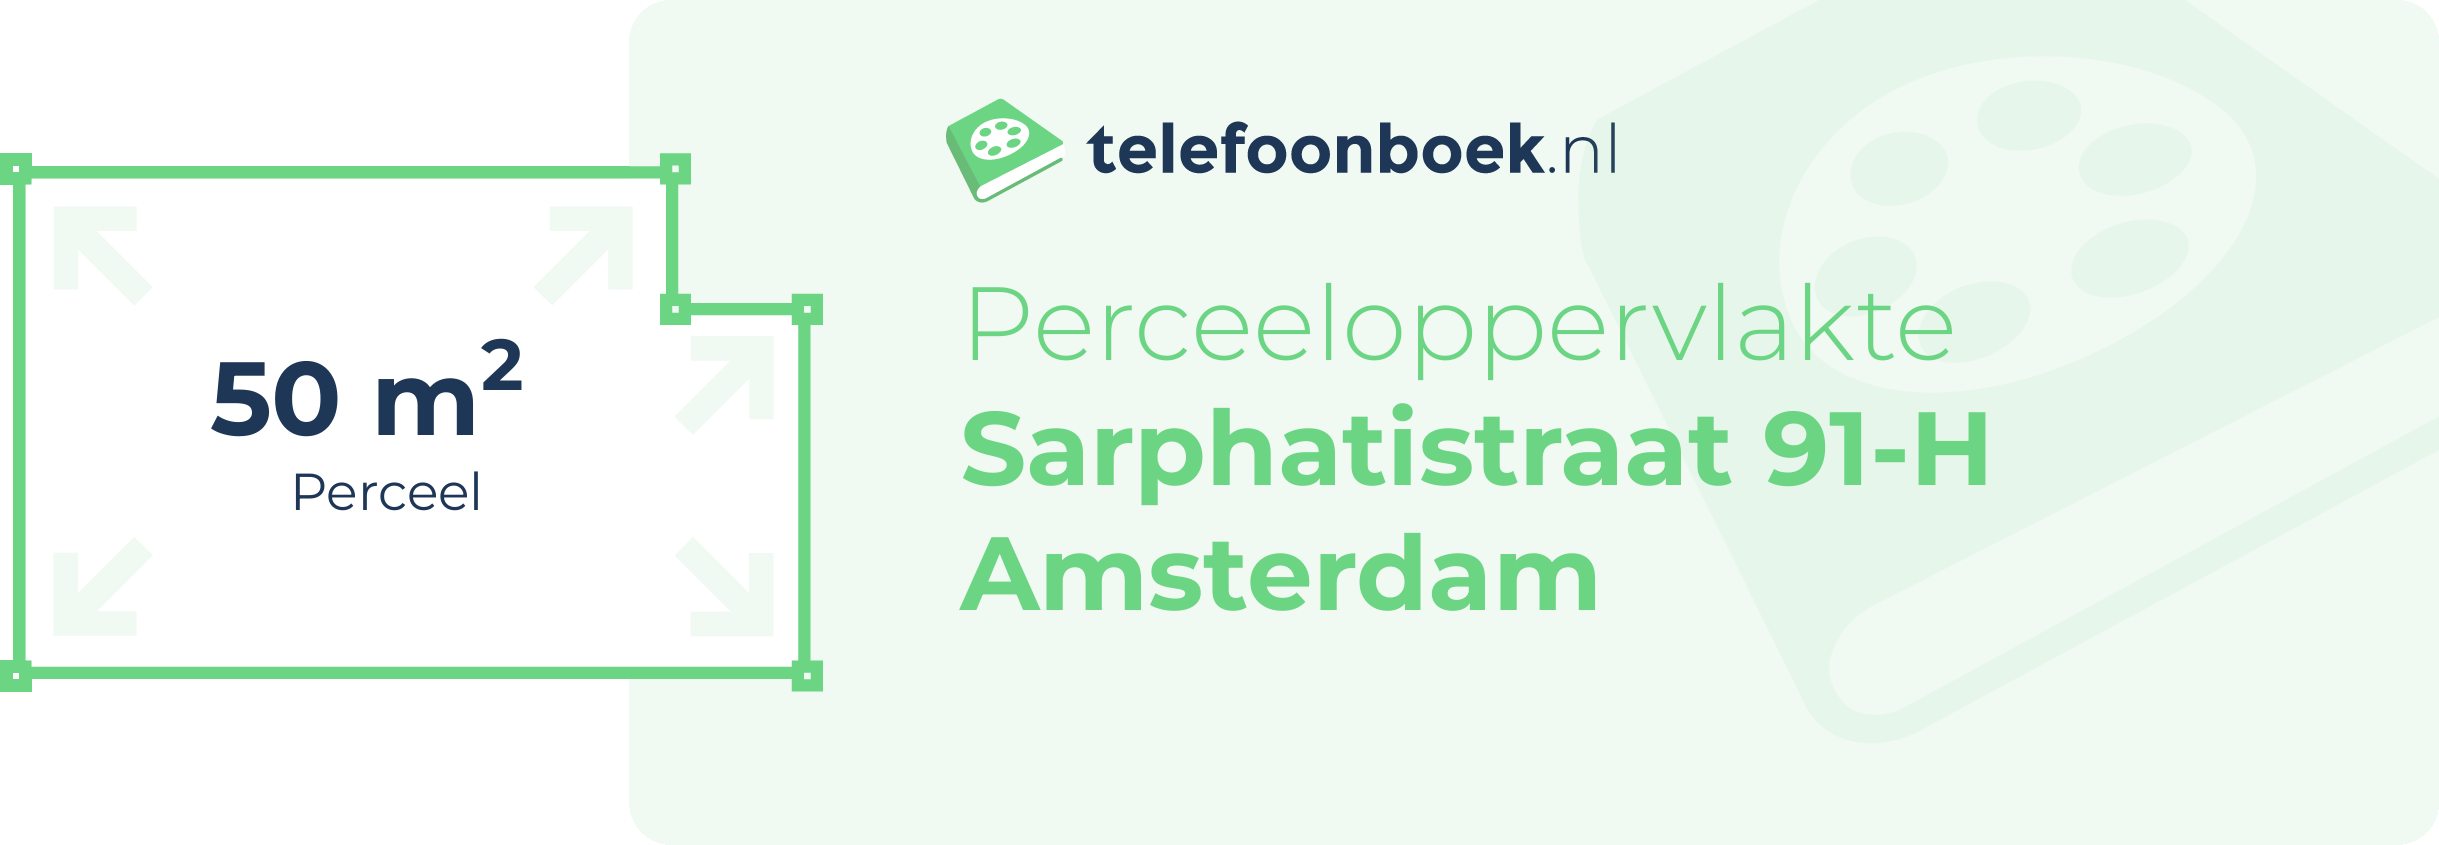 Perceeloppervlakte Sarphatistraat 91-H Amsterdam